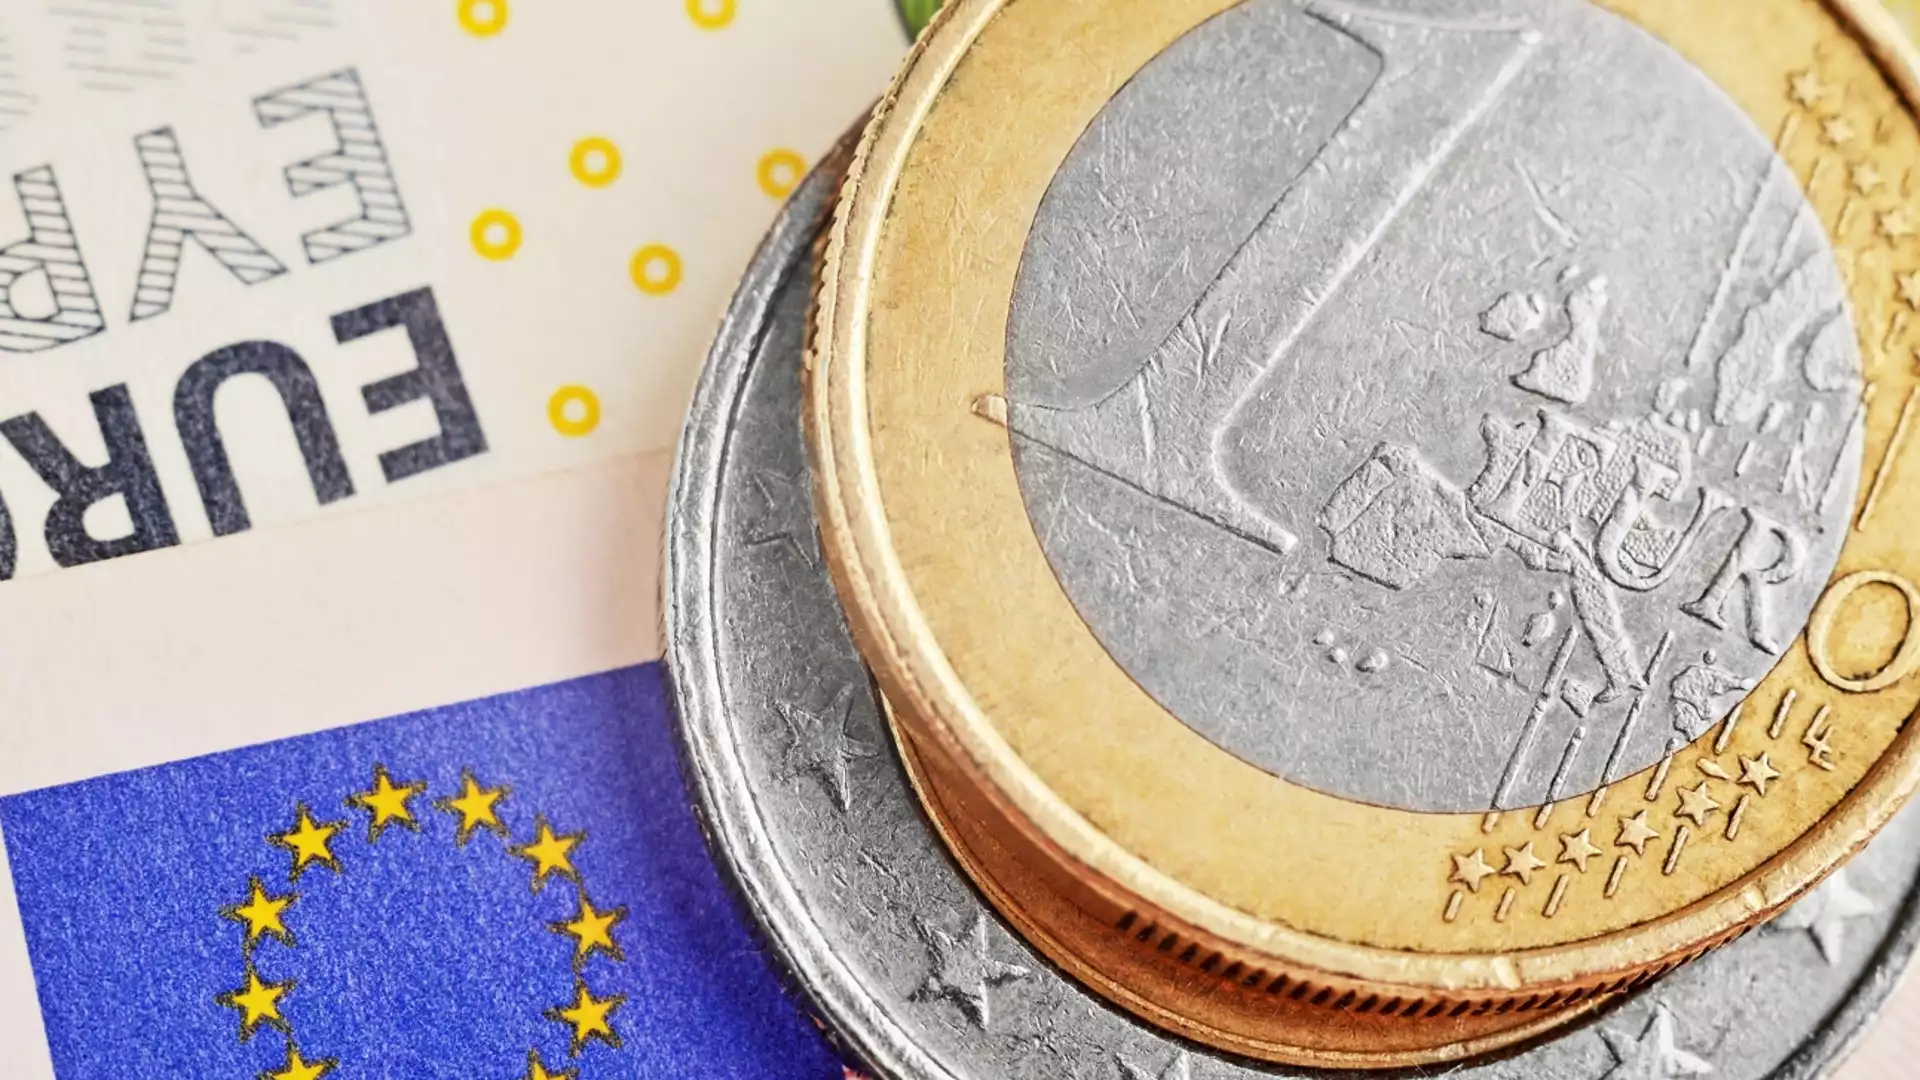 Еврото затвърди позиции след рязката промяна вчера